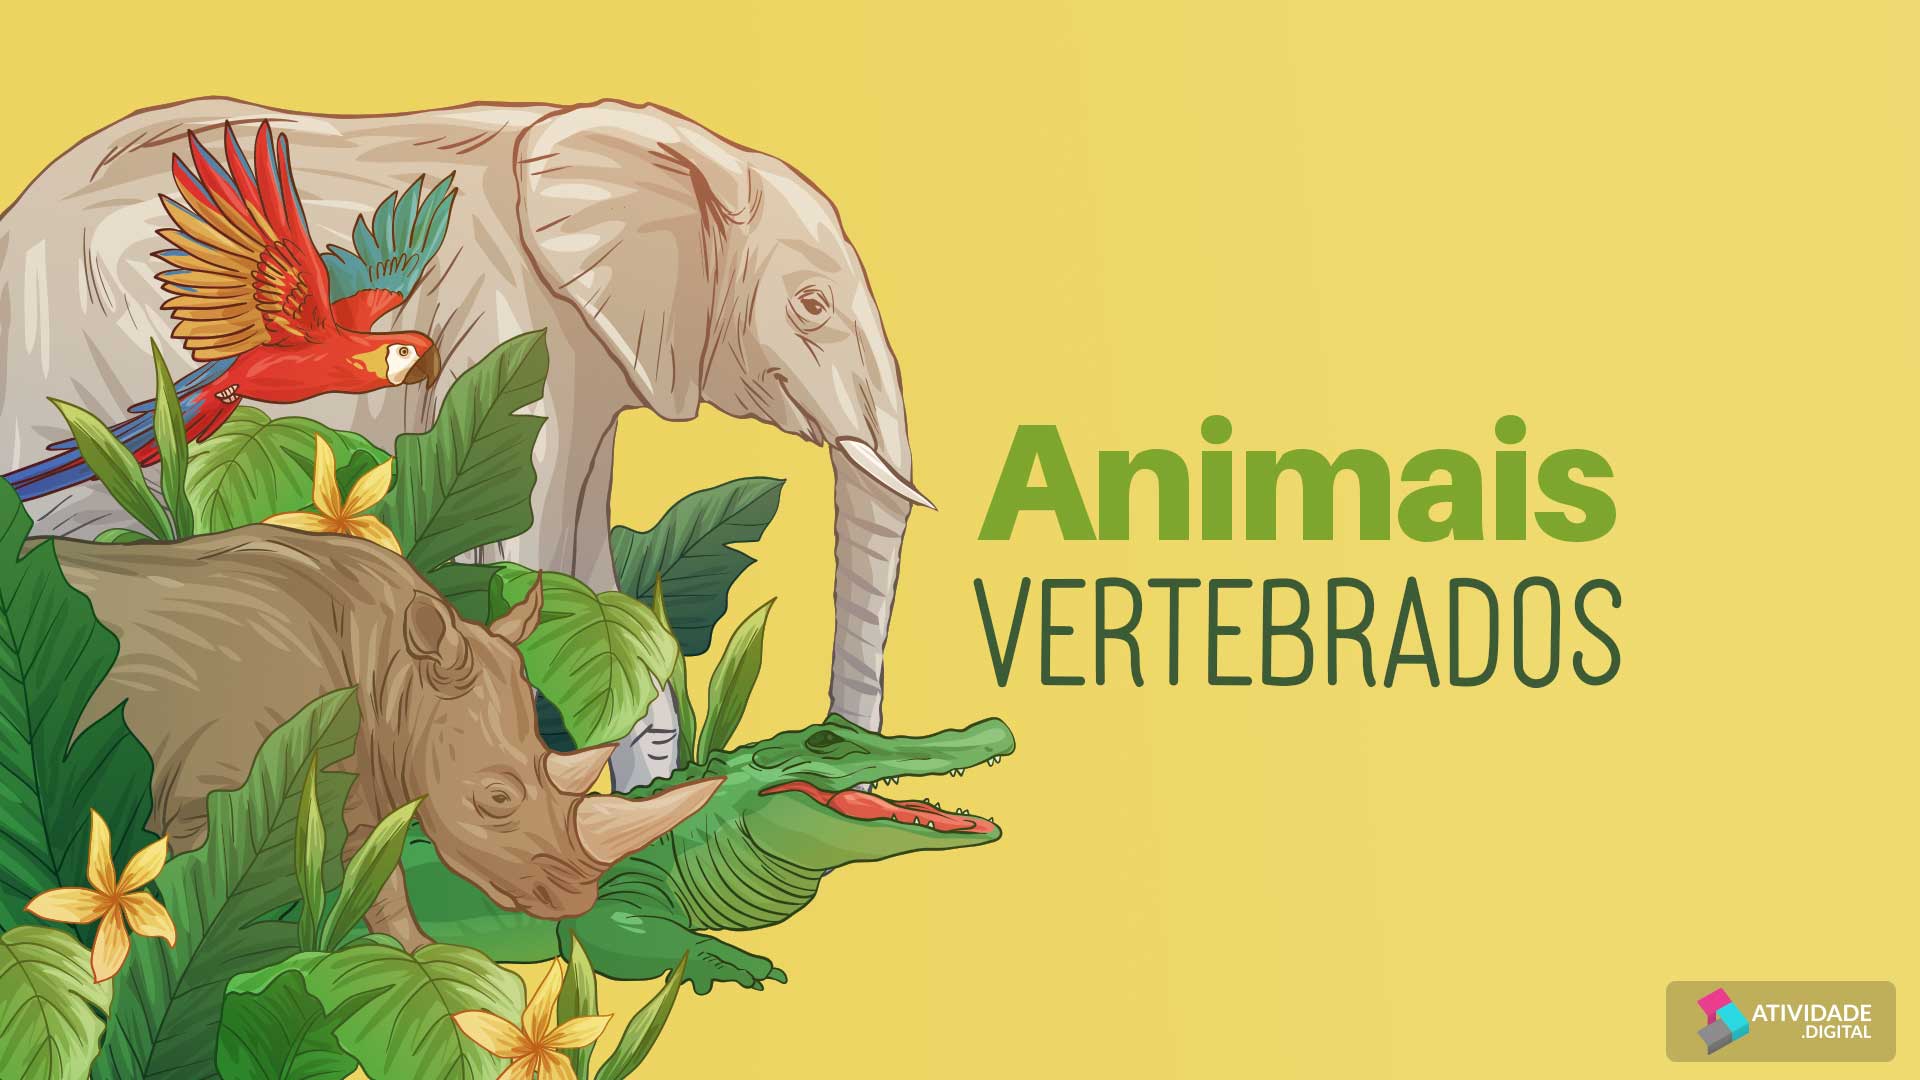 Animais vertebrados